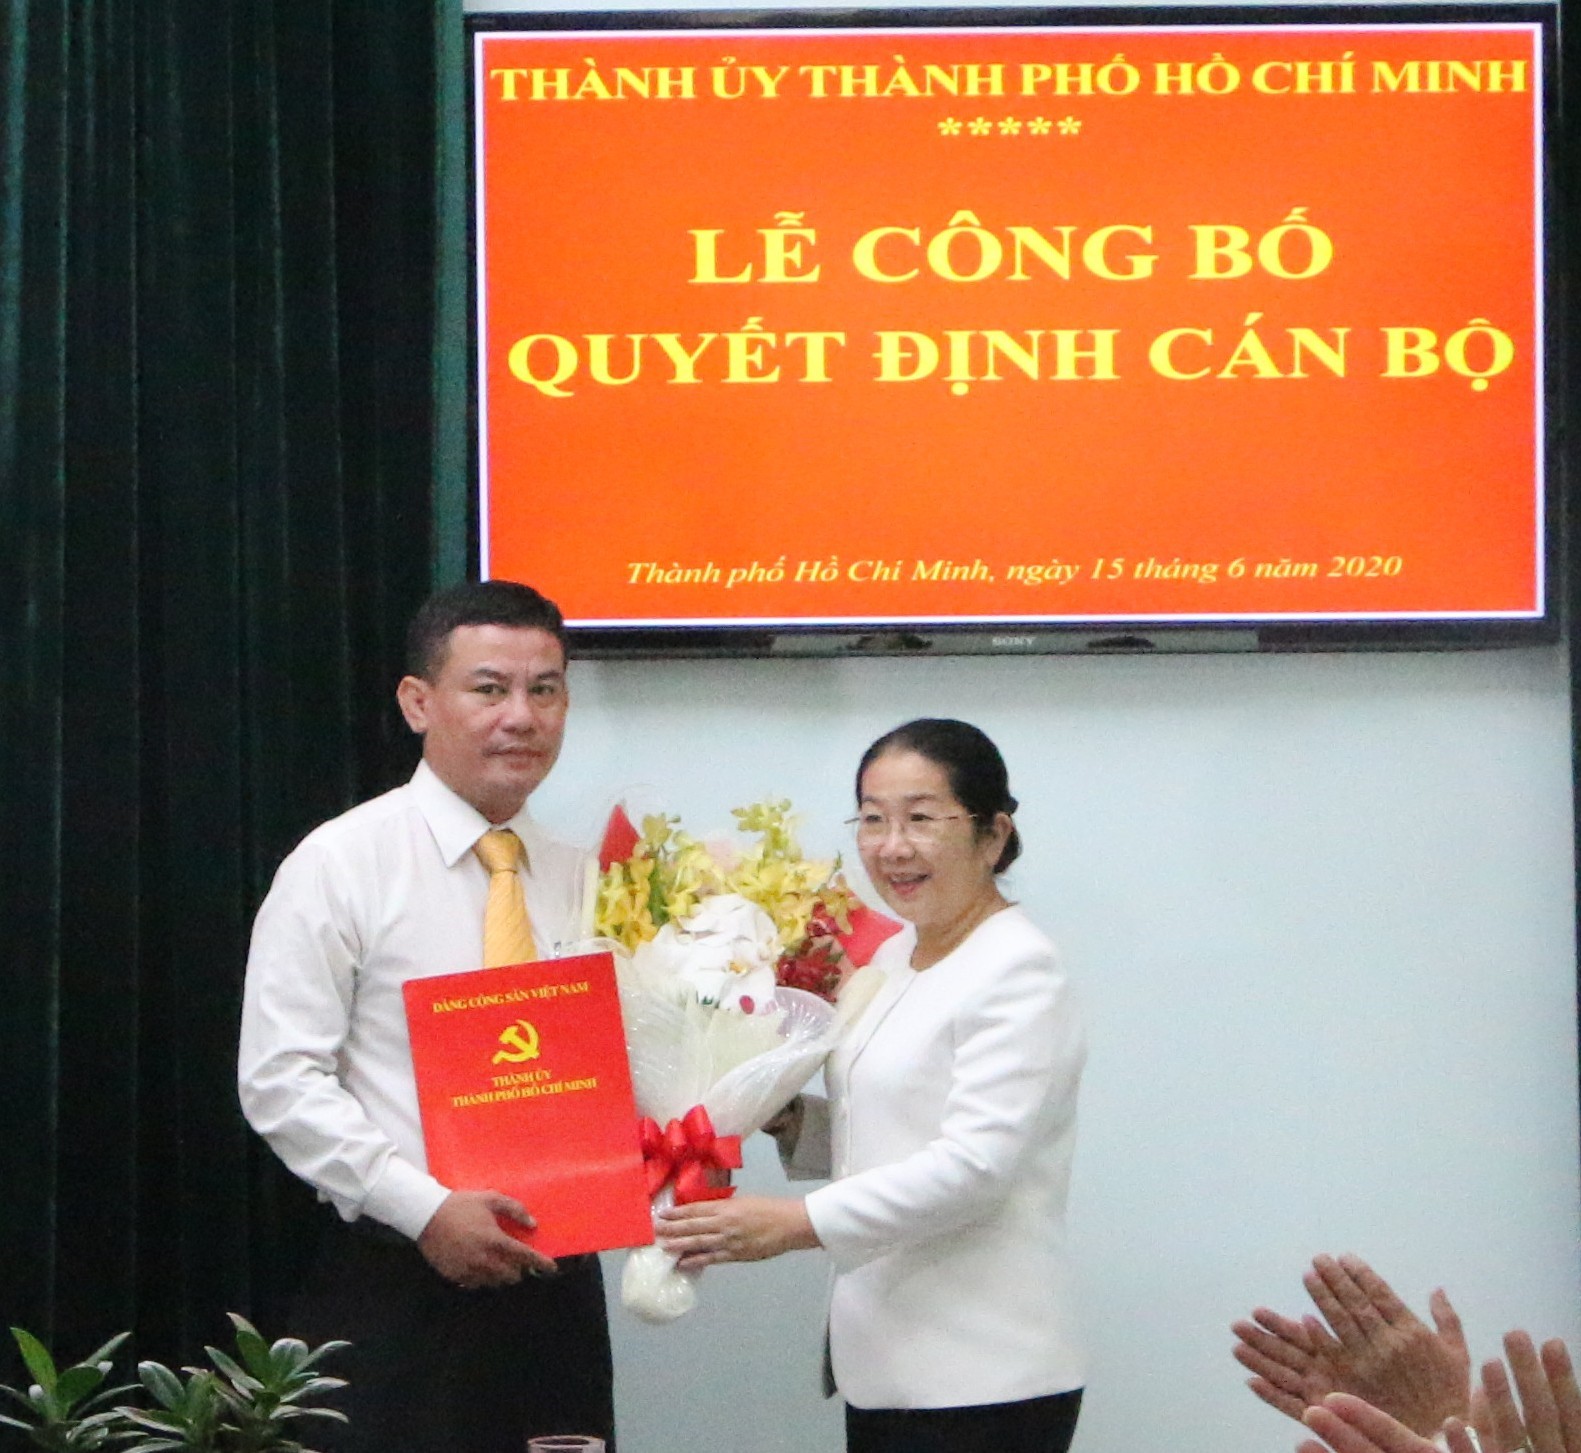 Đồng chí Võ Thị Dung, Phó Bí thư Thành ủy trao quyết định bổ nhiệm cho Đồng chí Lê Kim Hiếu